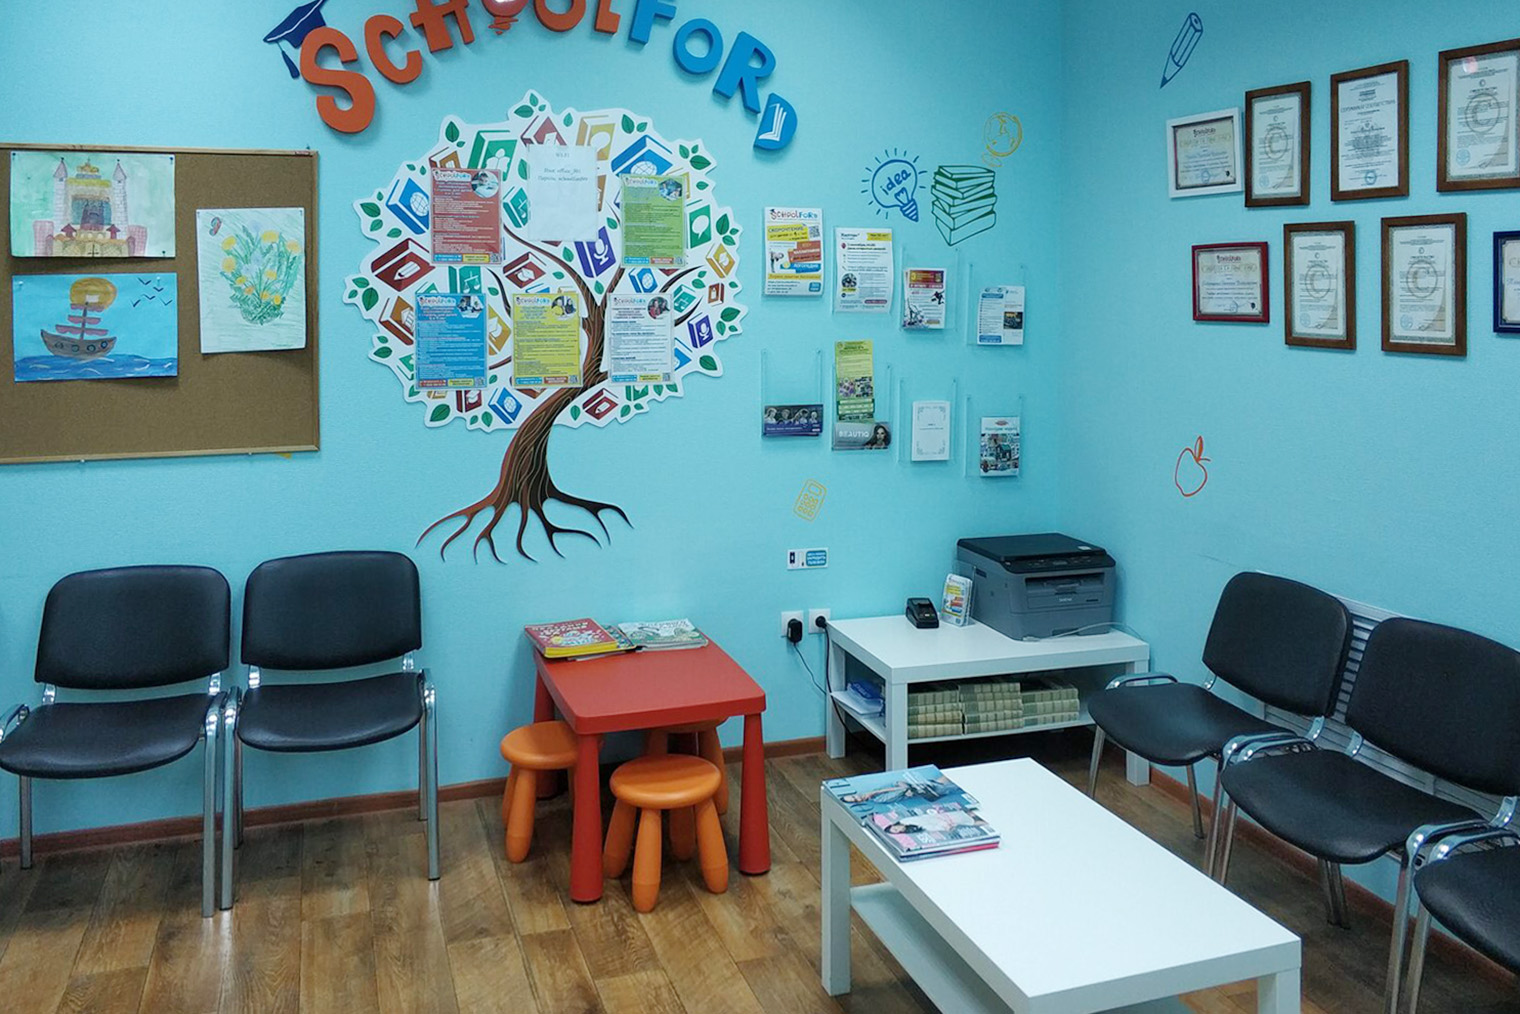 Пример помещения для школы Schoolford. Источник: franshiza.schoolford.ru